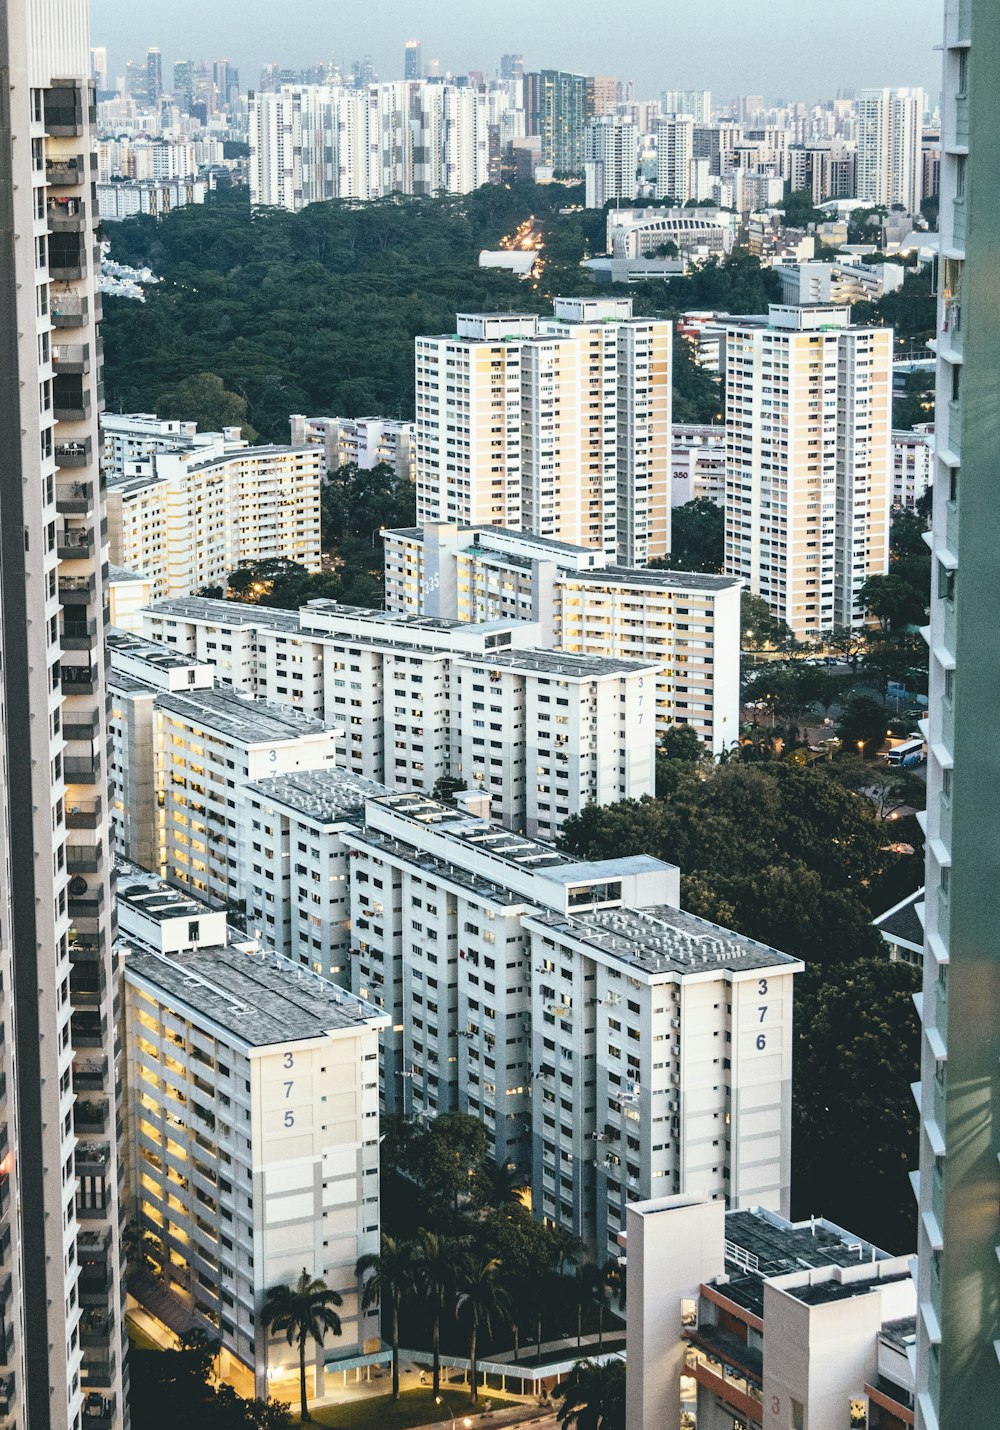 Fotografia aerea di edifici